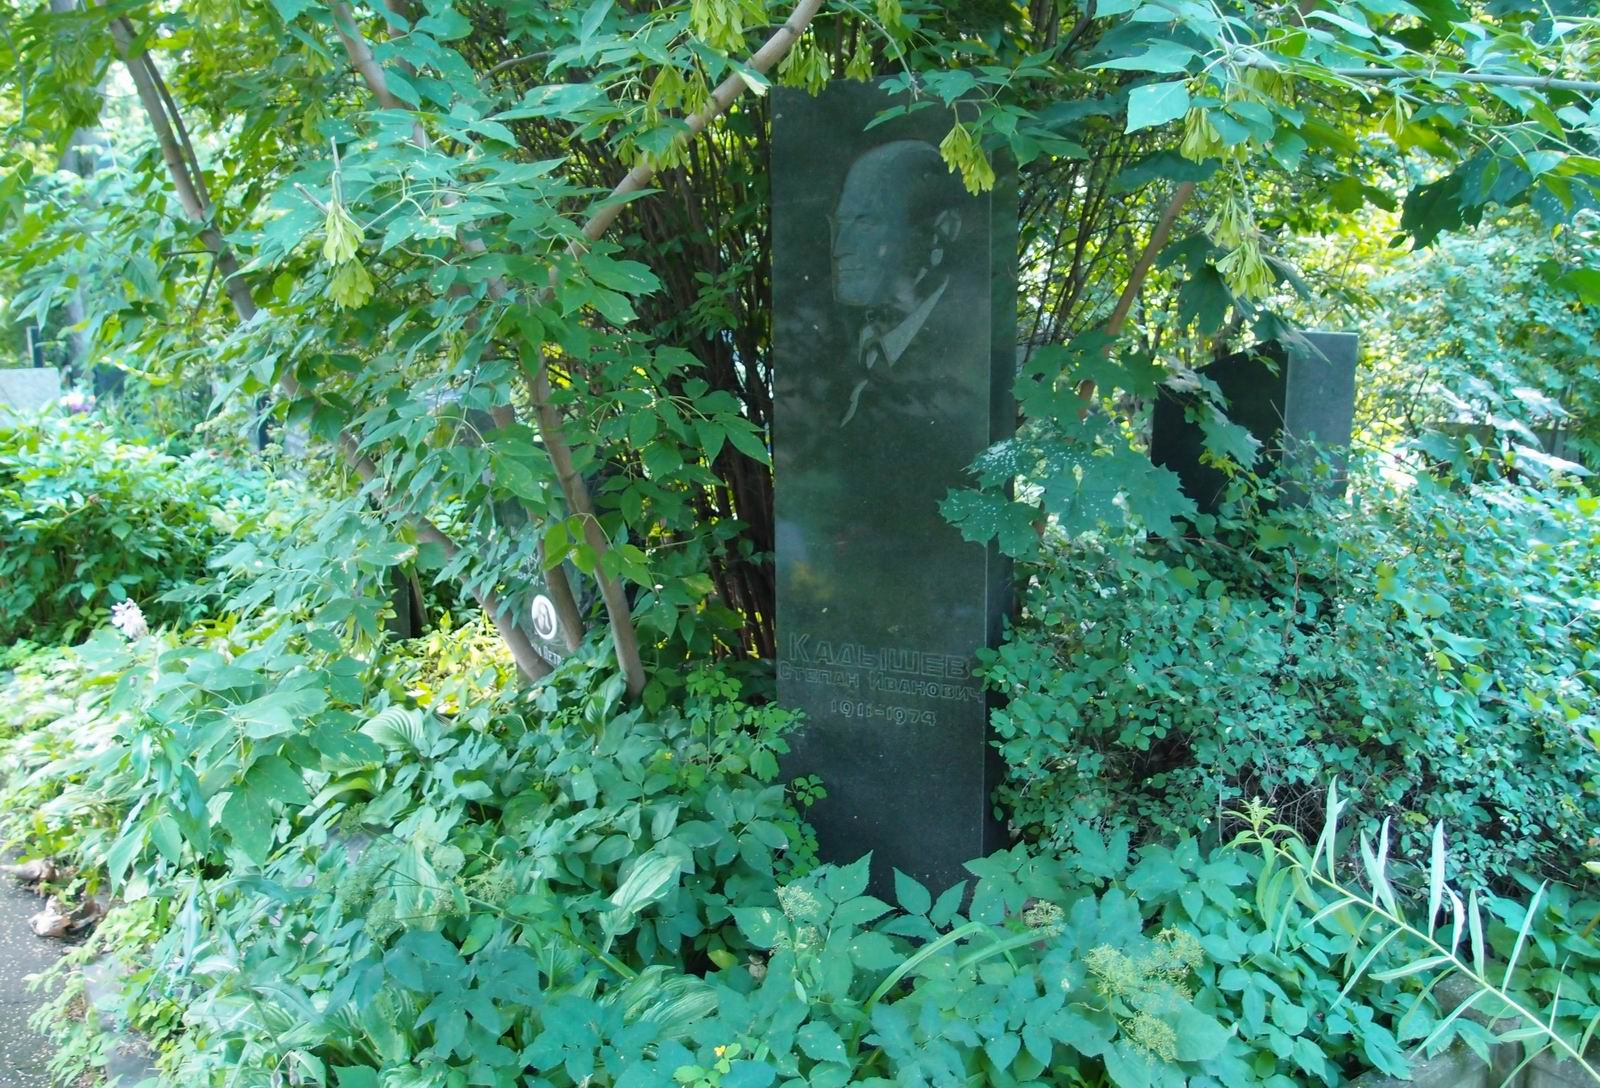 Памятник на могиле Кадышева С.И. (1911-1974), арх. И.Студеникин, на Новодевичьем кладбище (3-11-10).